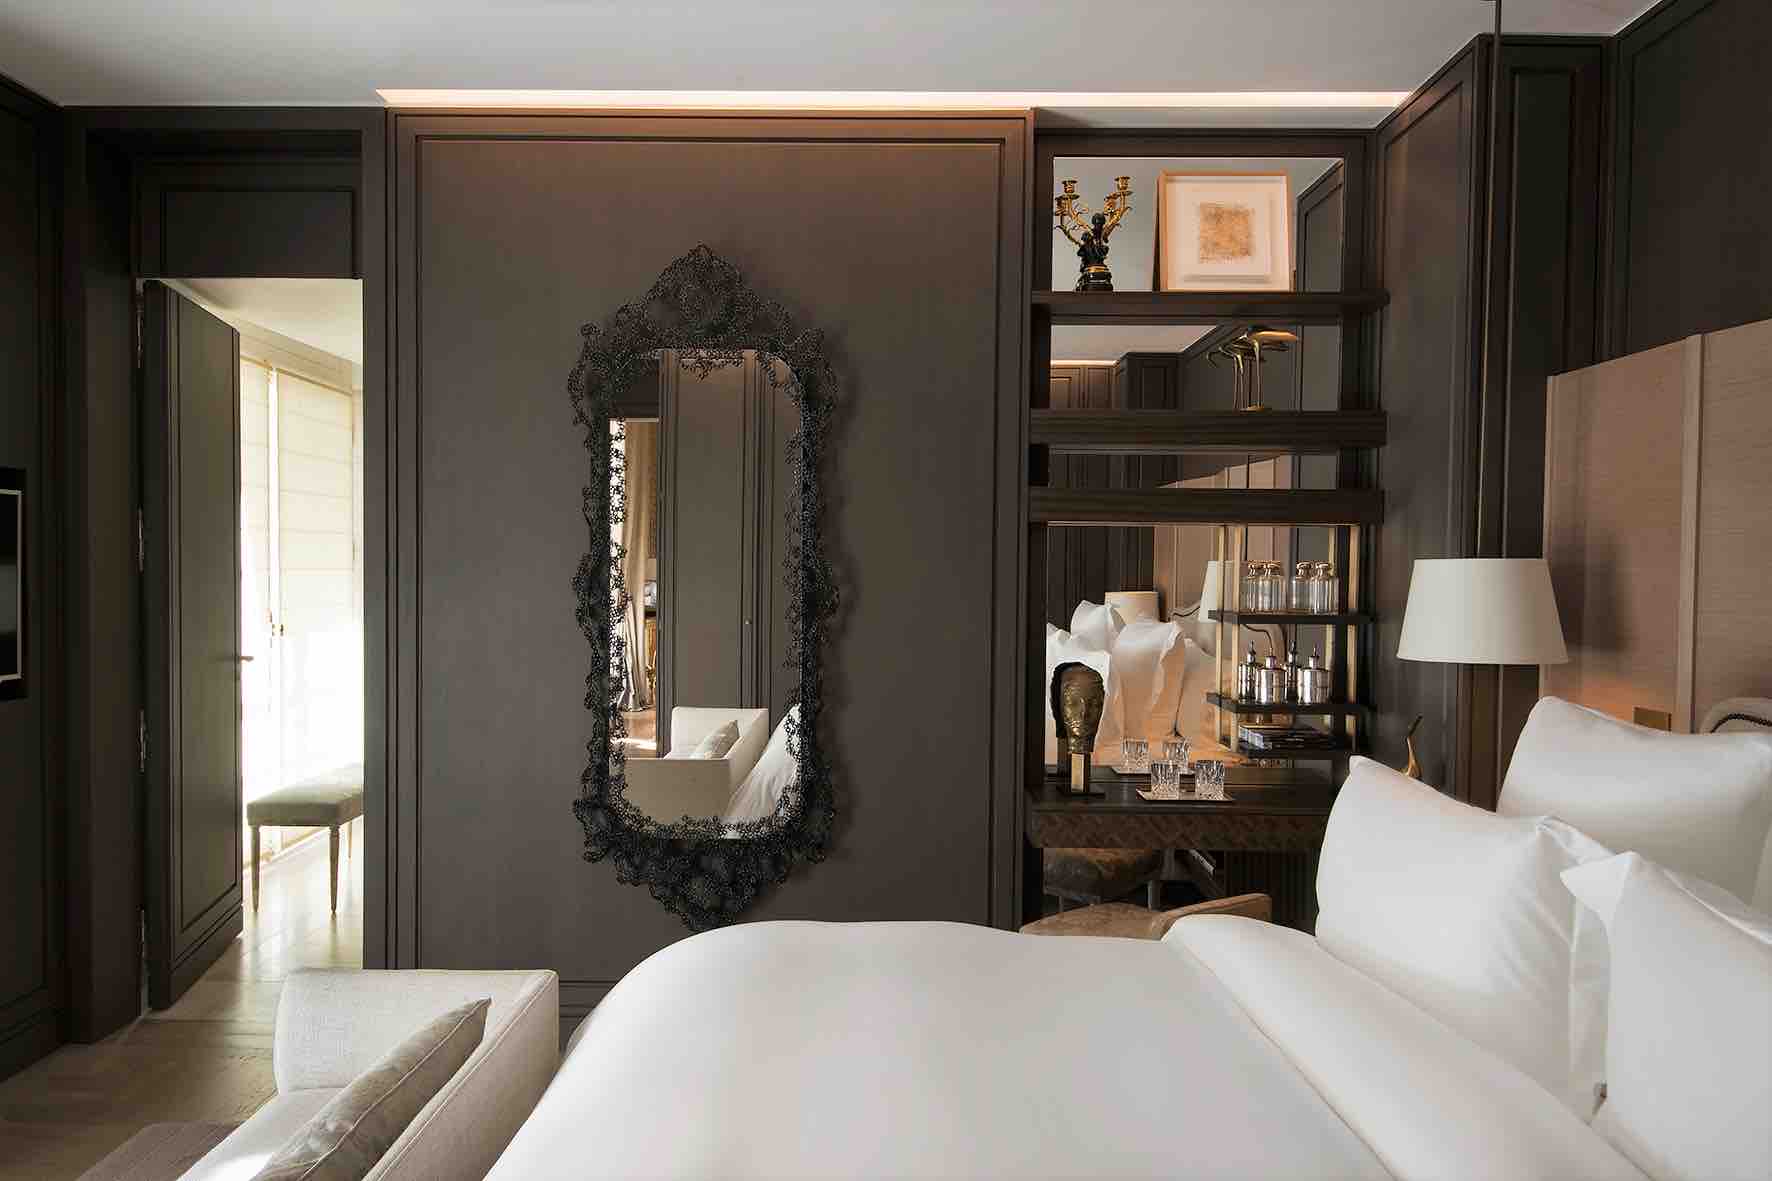 2.2 Suite Duc de Crillon - Bed room